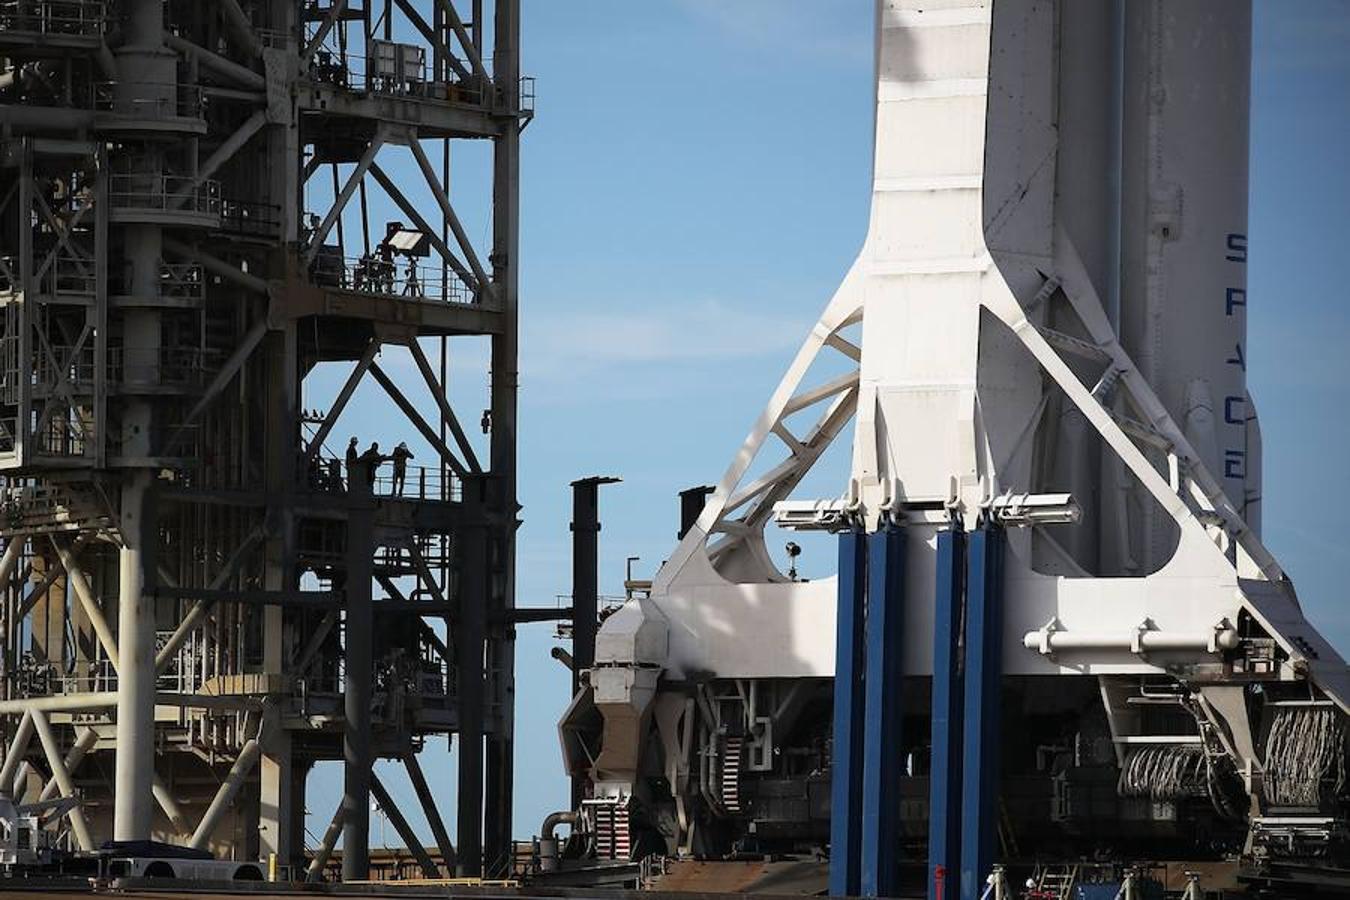 Detalle del Falcon Heavy dos días antes del despegue. Este cohete es el más grande desde el Apolo (tiene 27 motores) y alcanzó el cielo desde la misma plataforma de lanzamiento que la NASA utilizó para las misiones estadounidenses la luna hace cuatro décadas. 